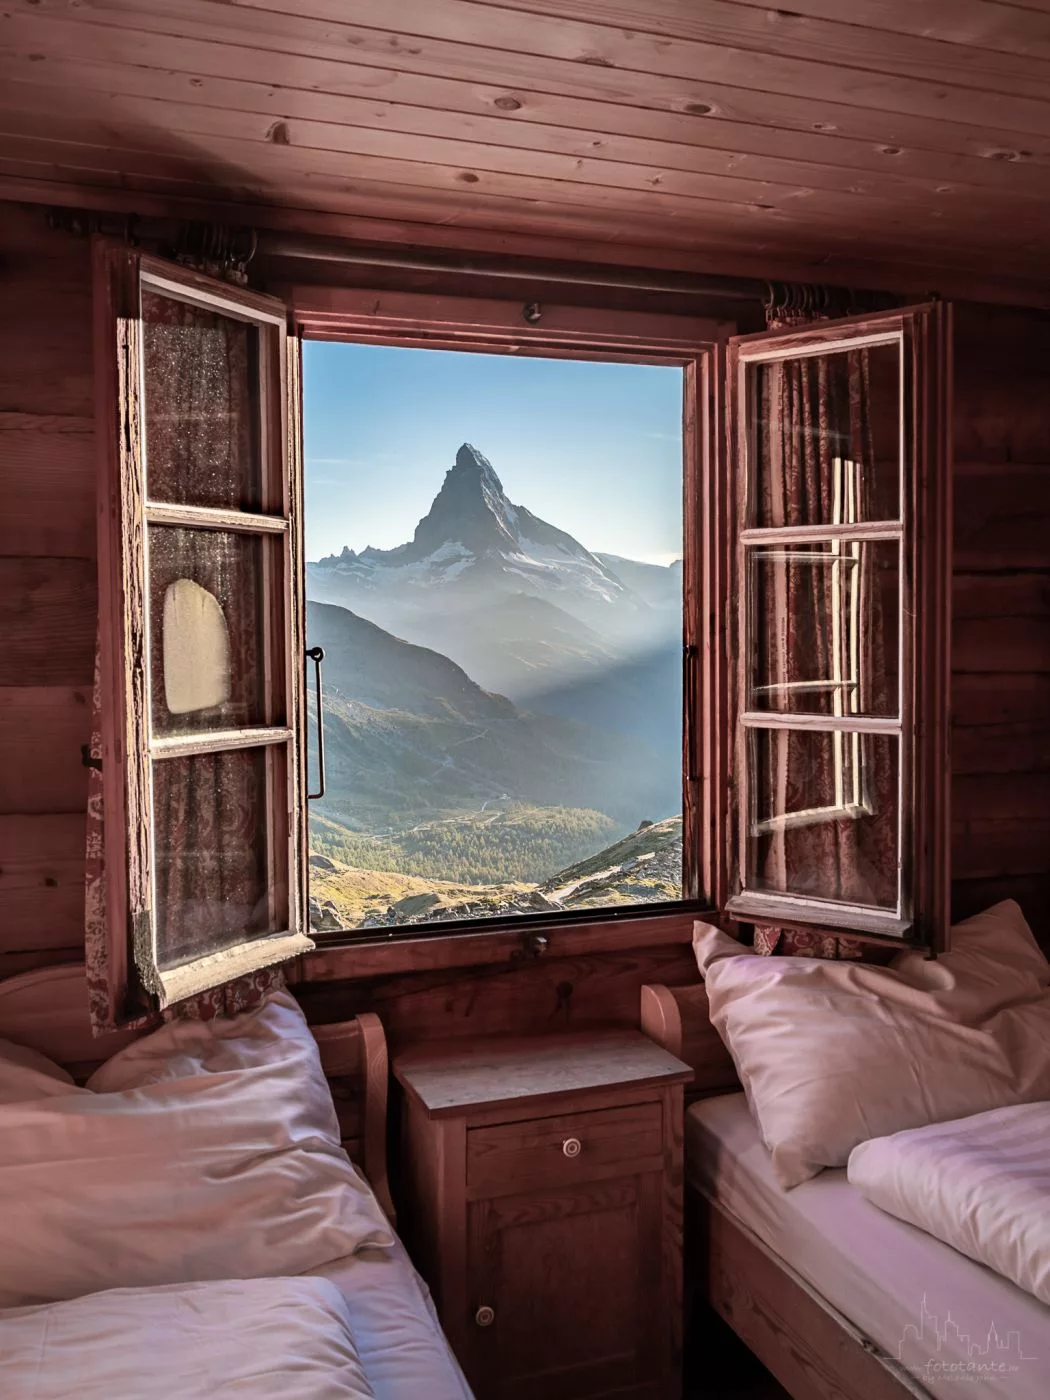 Room With A View Matterhorn Switzerland.webp?h=1400&q=83